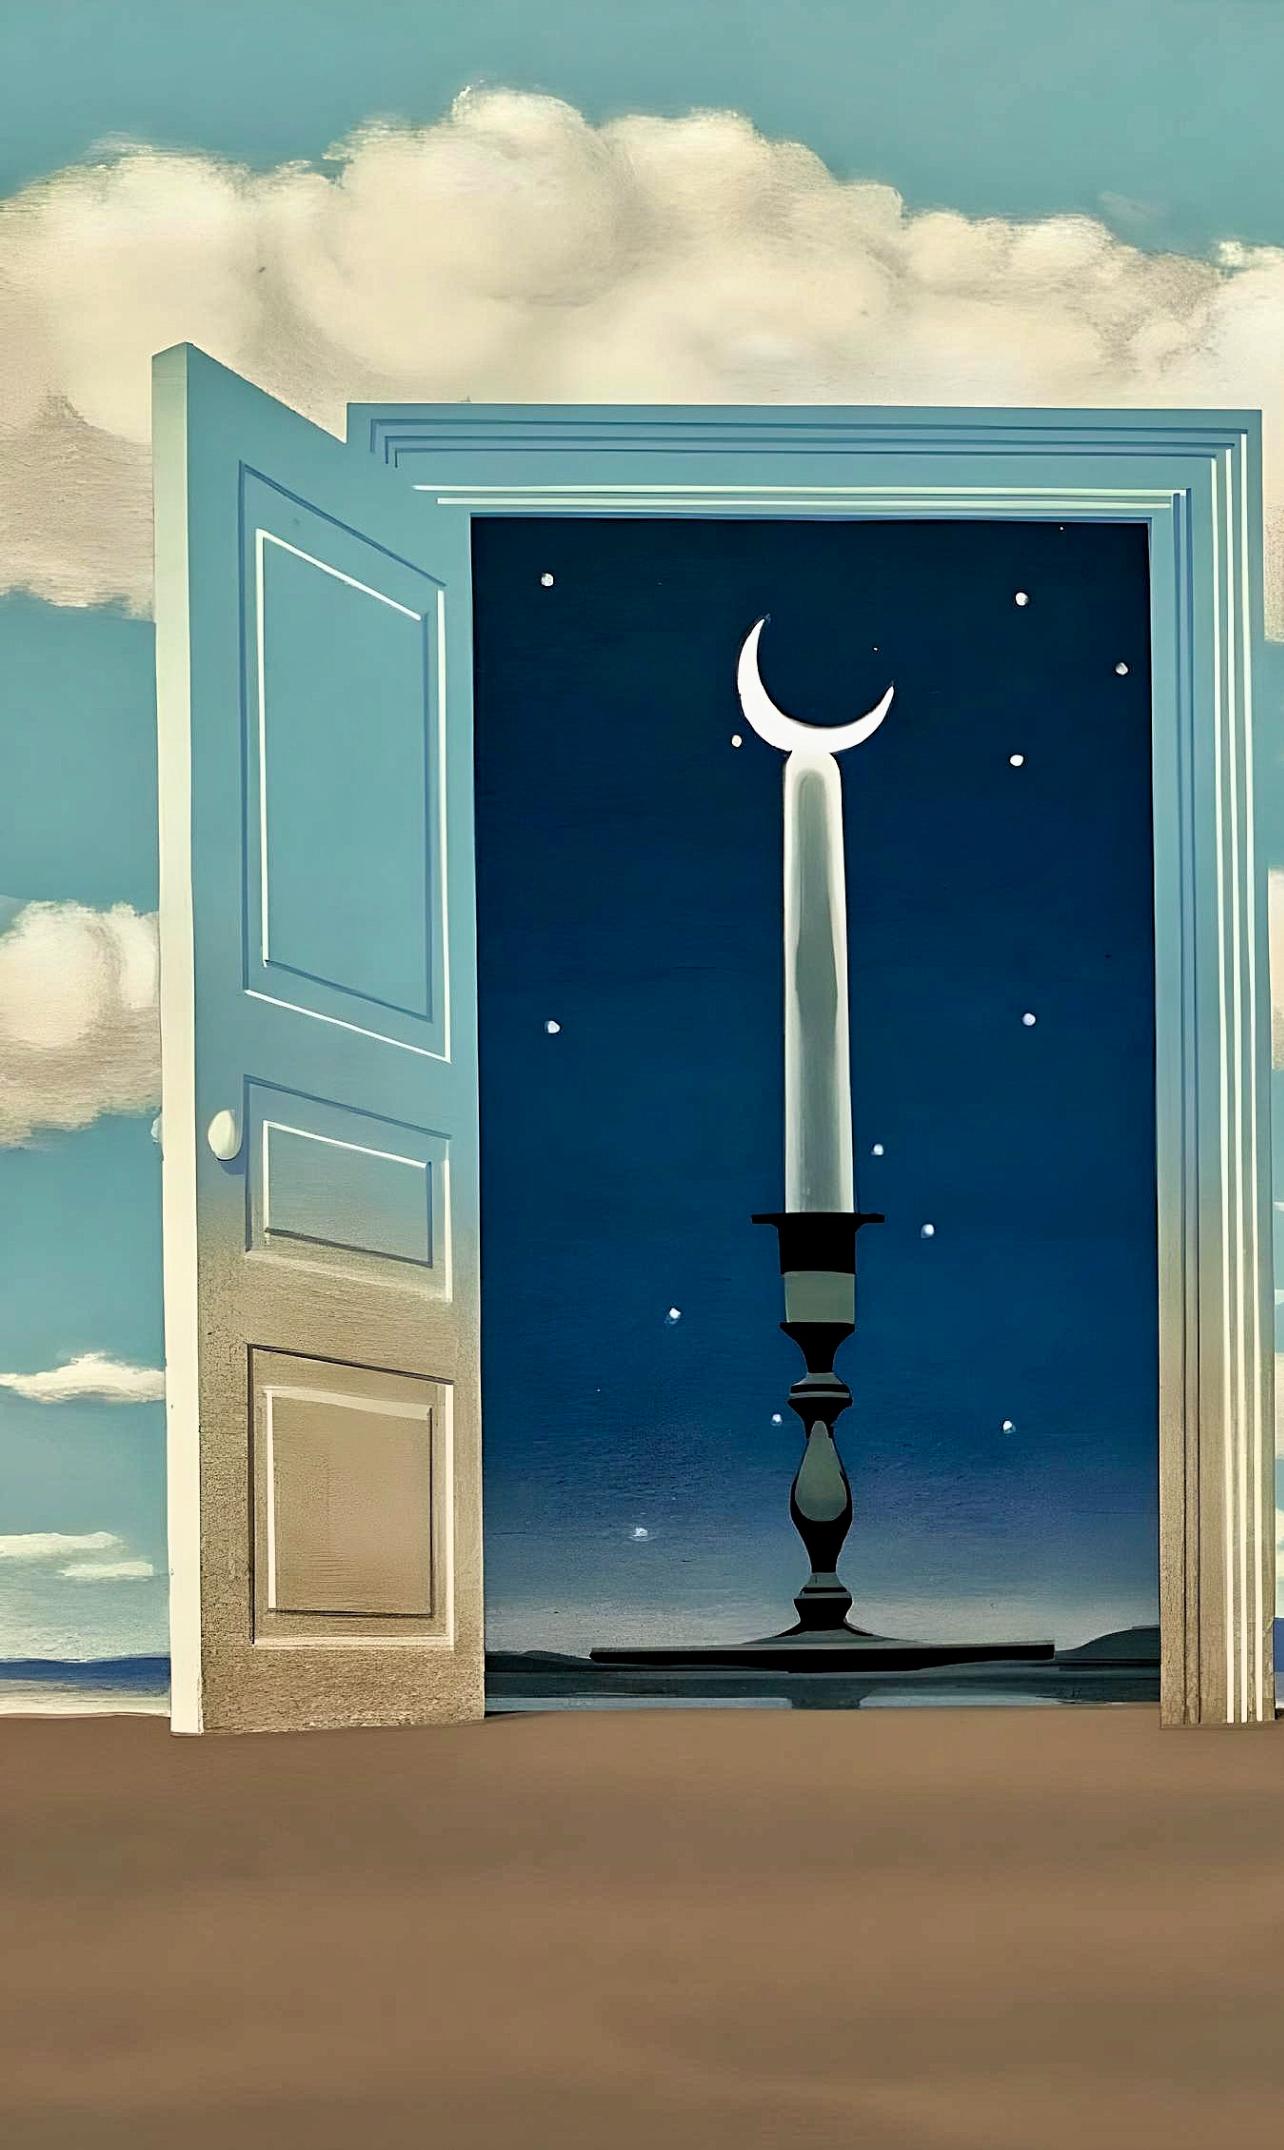 Magritte, Une Porte s'ouvre sur la Nuit Veloutée, from Les Enfants (after) - Surrealist Print by René Magritte